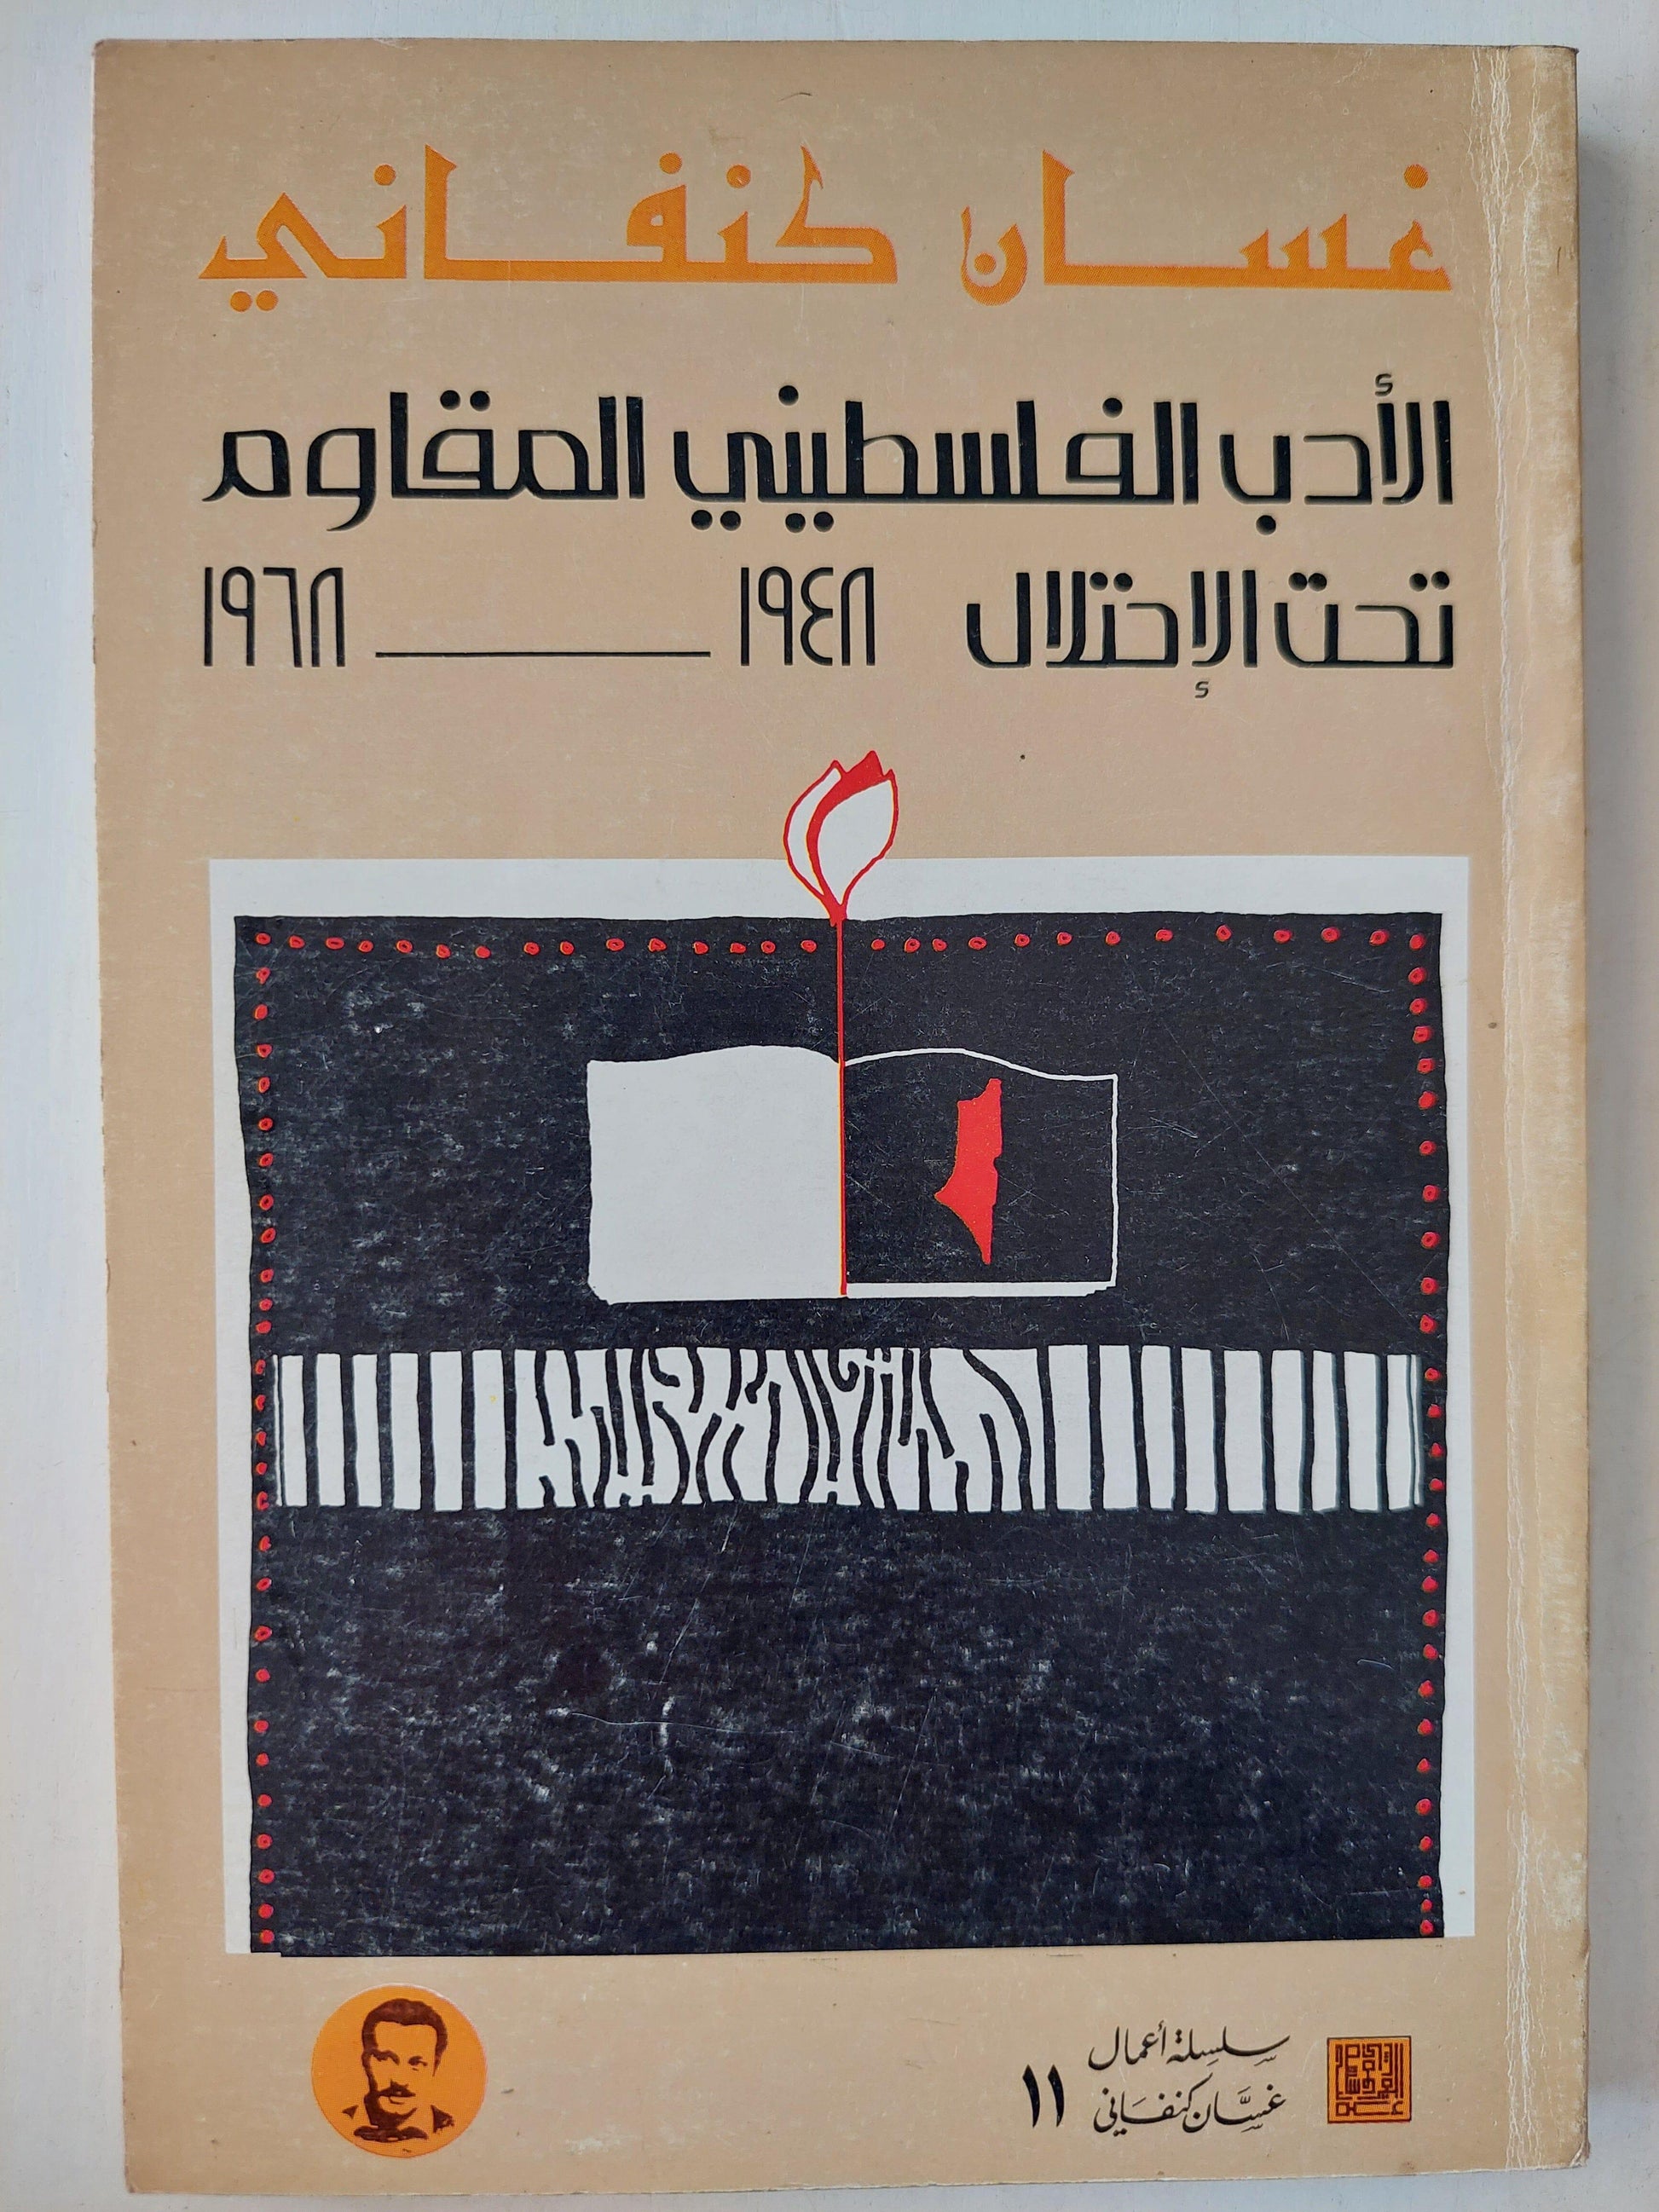 الأدب الفلسطيني المقاوم تحت الإحتلال 1948 - 1968 / غسان كنفاني - متجر كتب مصر